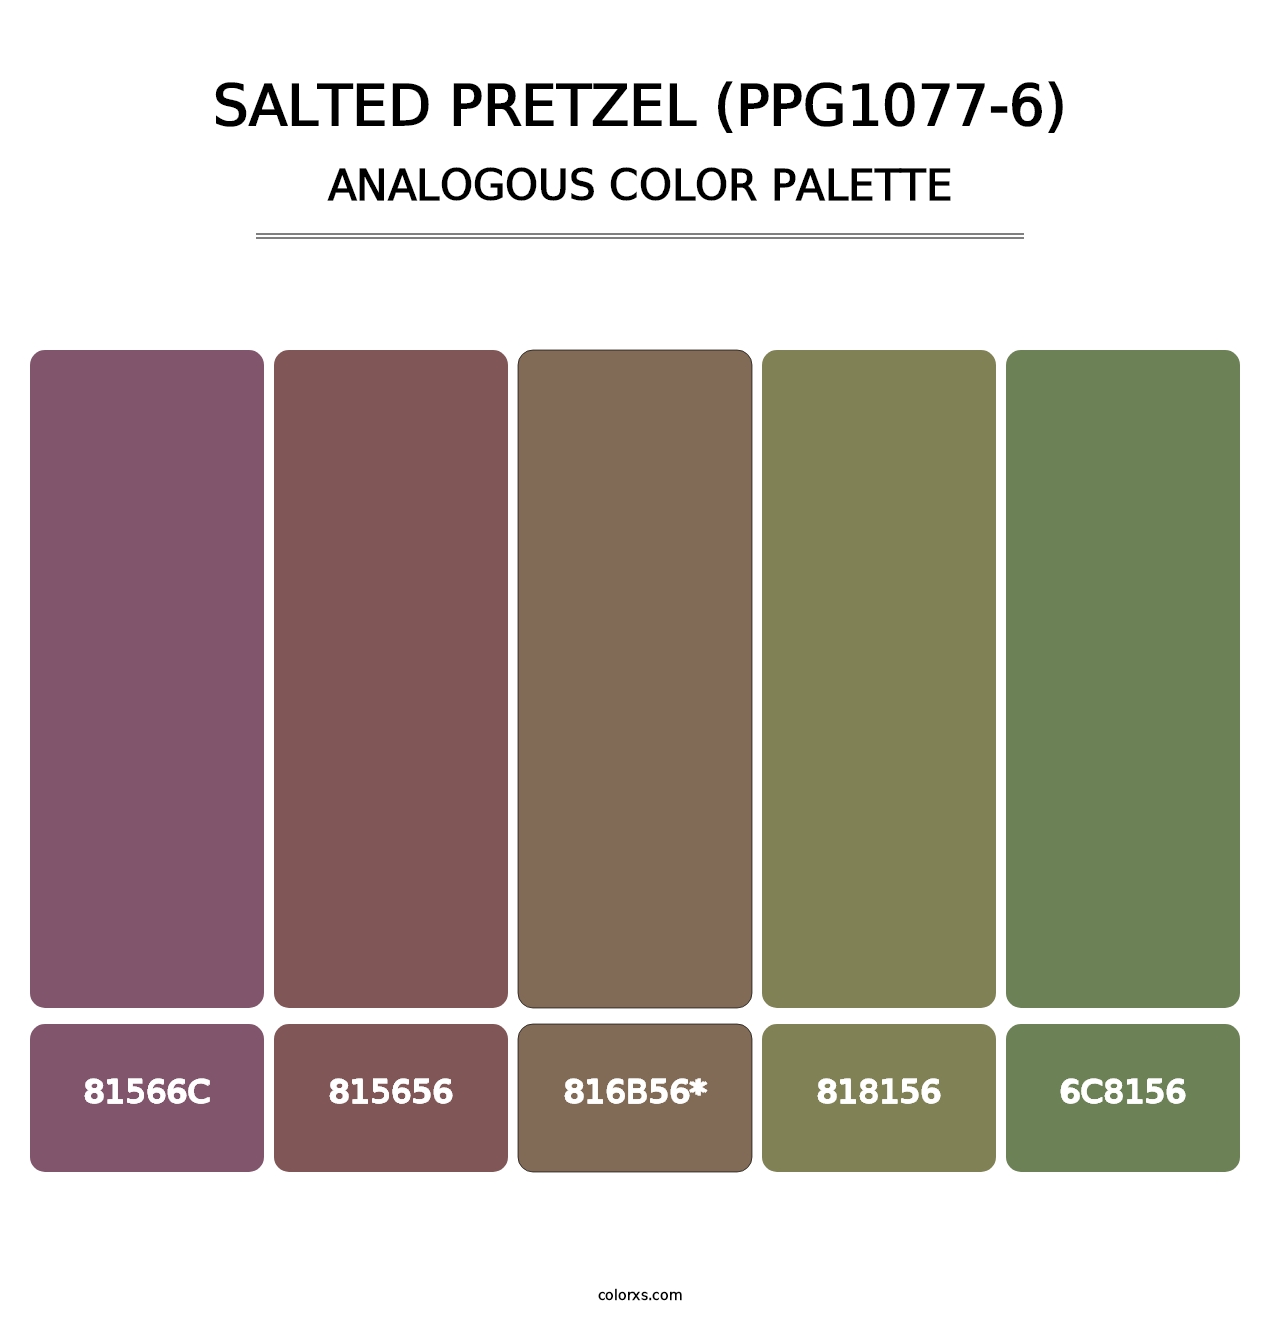 Salted Pretzel (PPG1077-6) - Analogous Color Palette